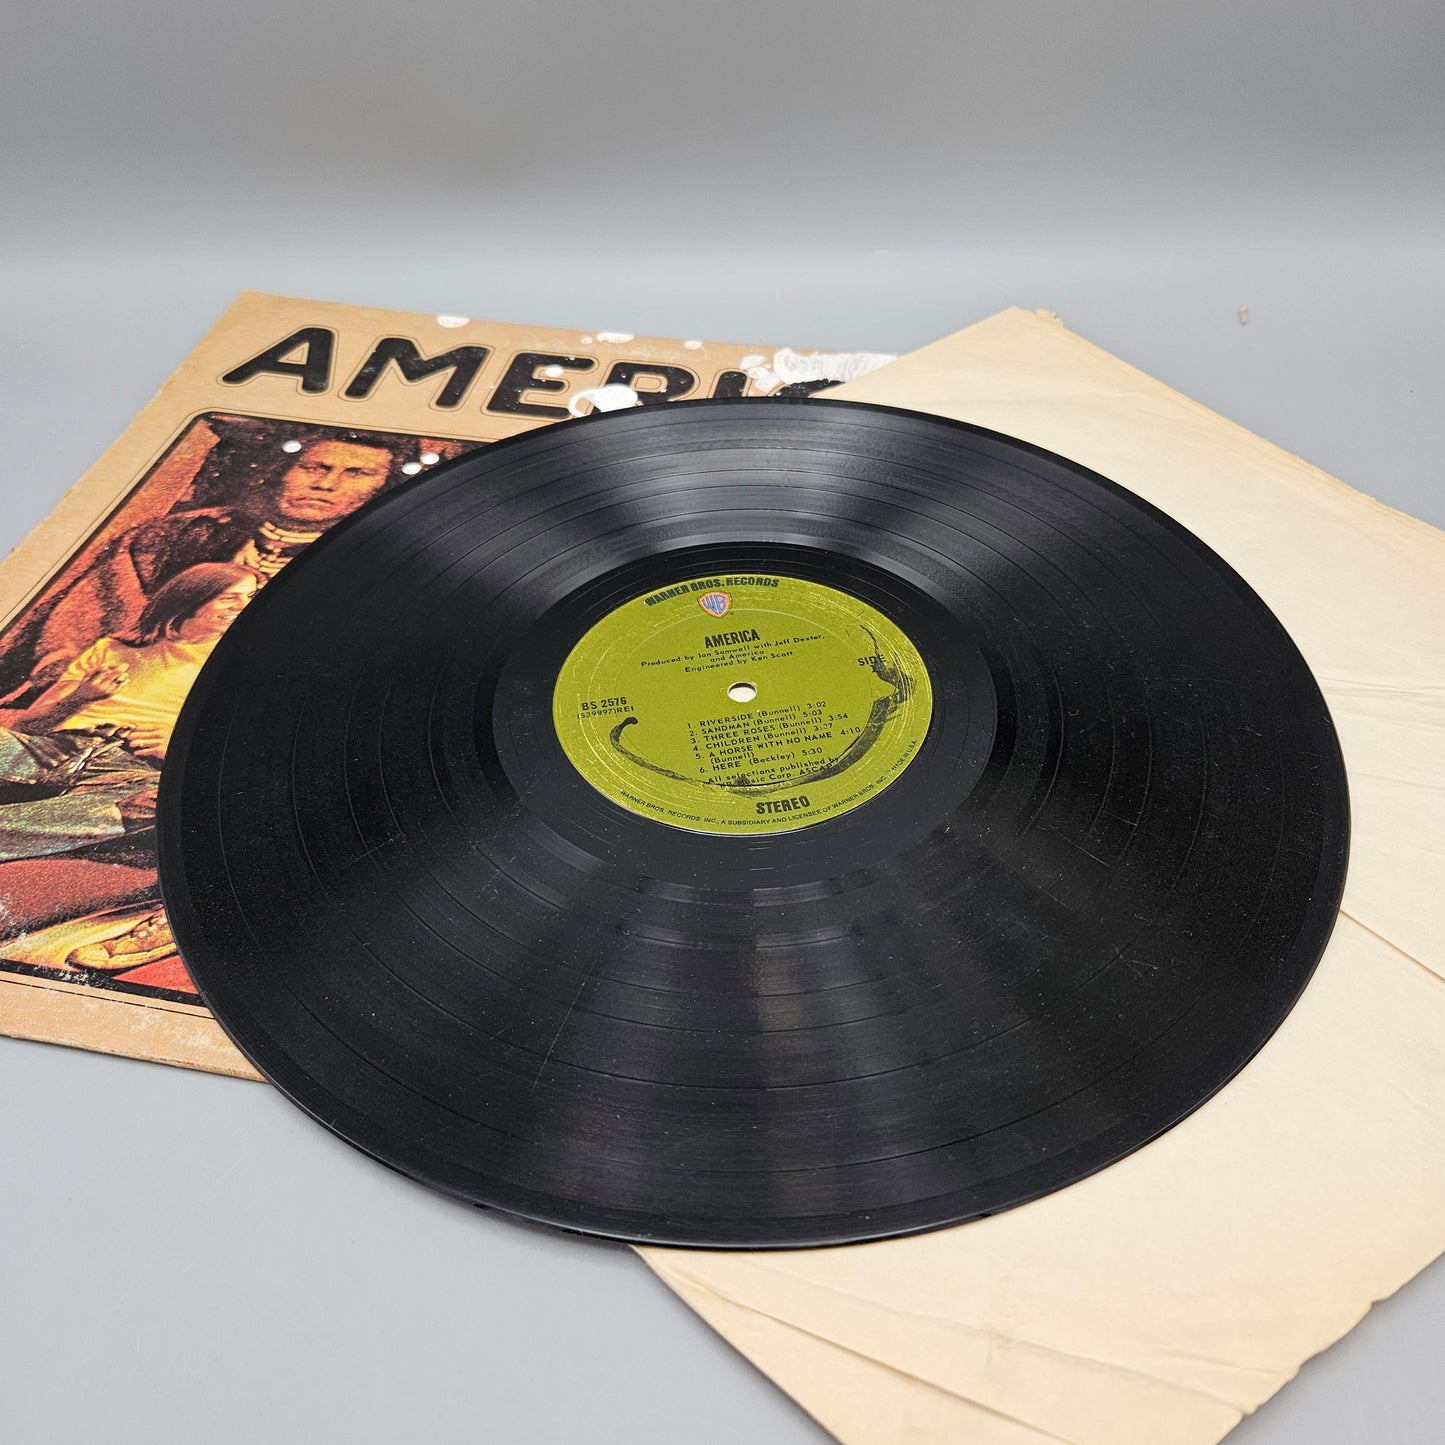 Vintage America Self Titled Warner Bros. LP Record